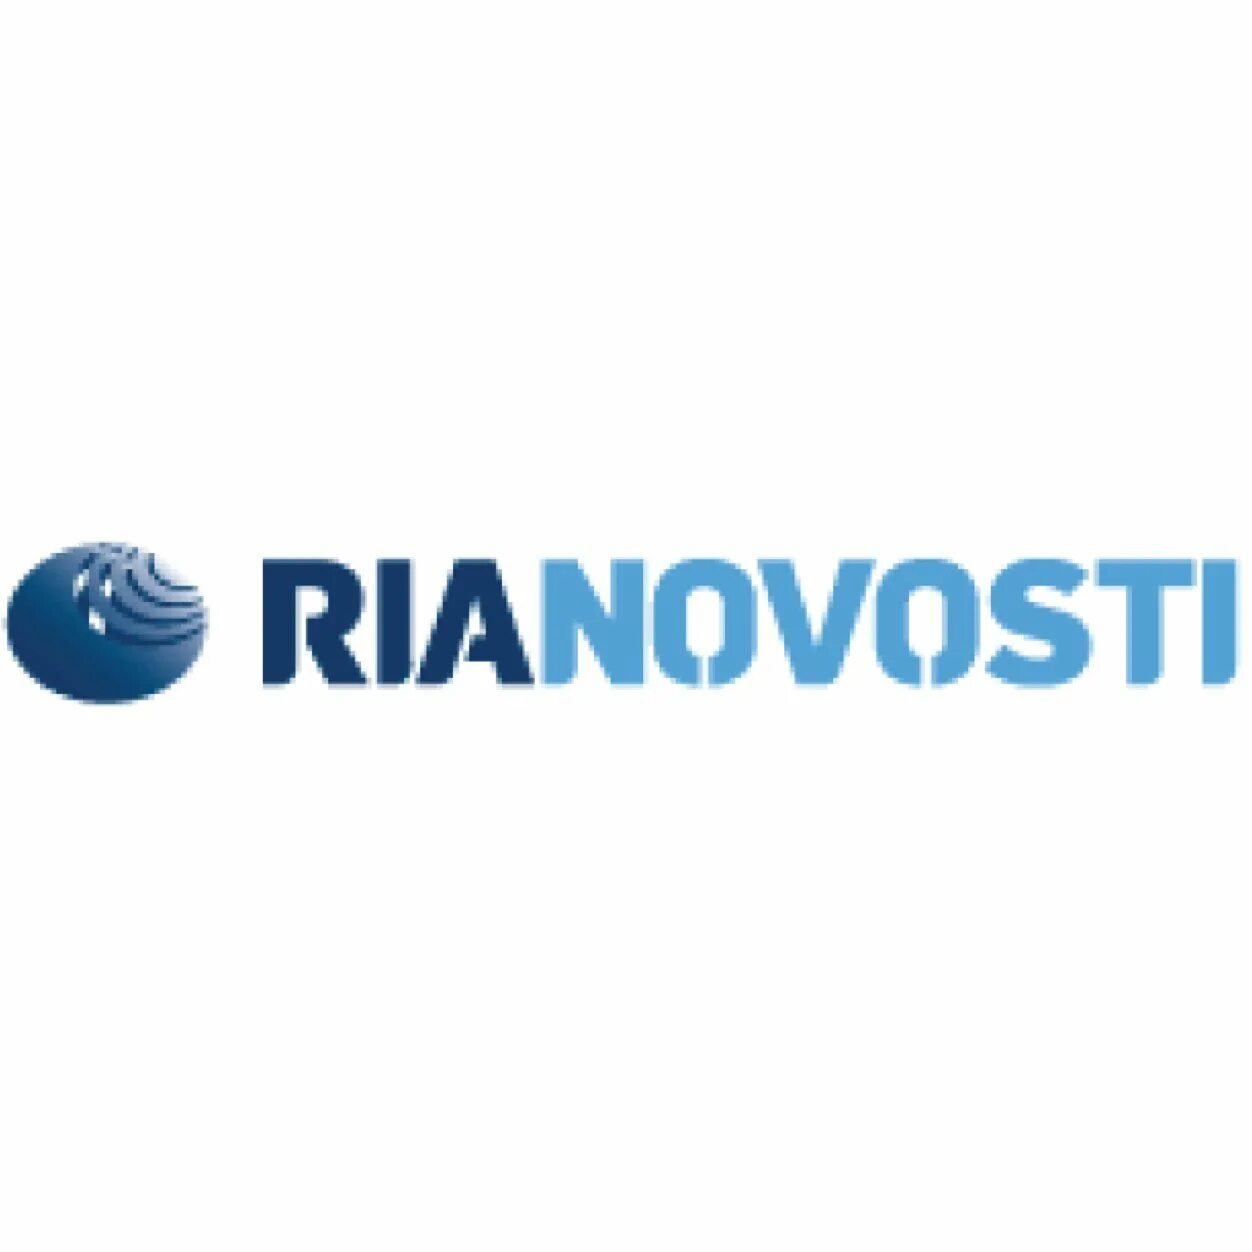 Риа н. РИА новости логотип на прозрачном фоне. PЭA. RIA novosti логотип. РИА новост.